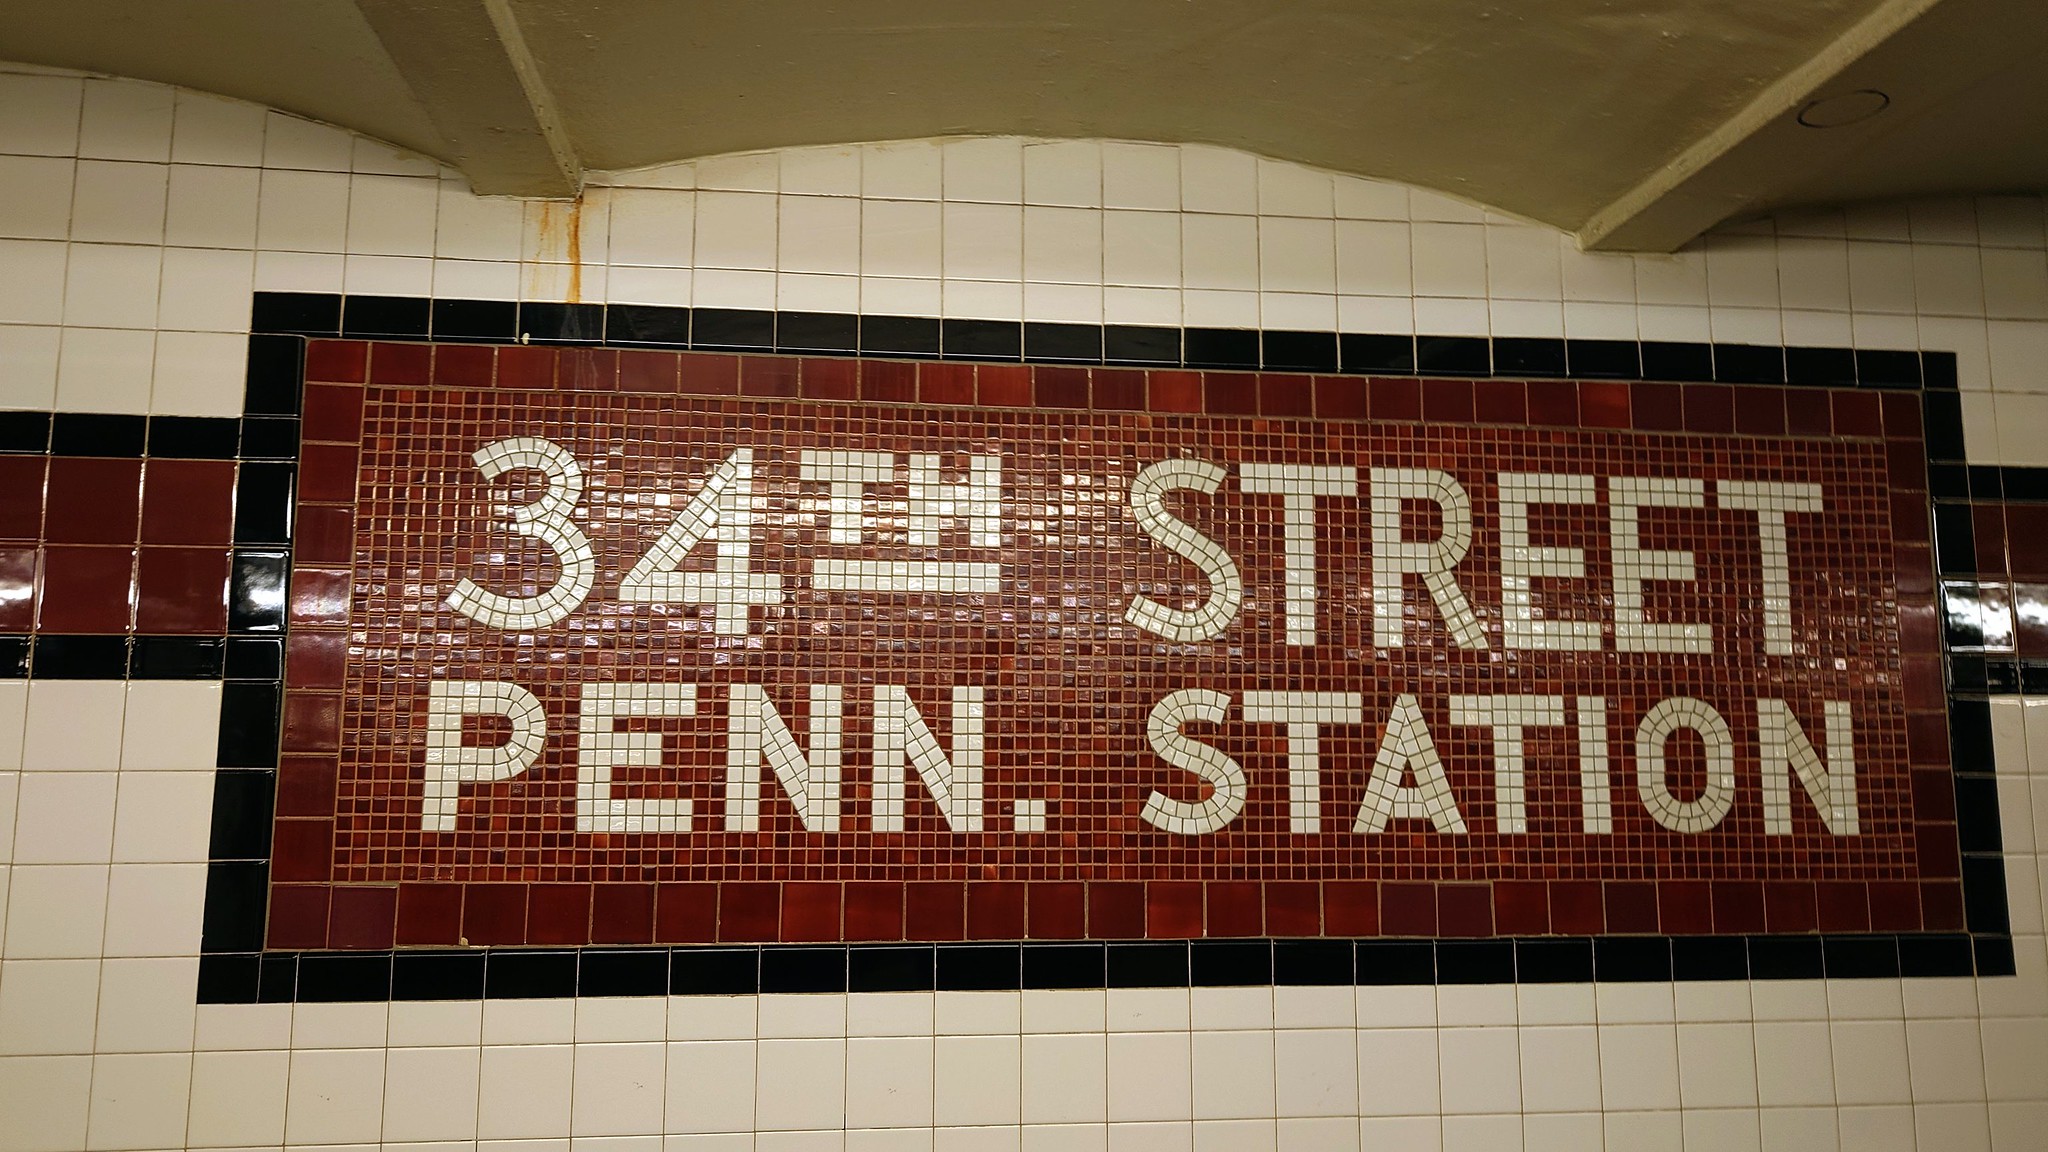 Subway - New York, NY